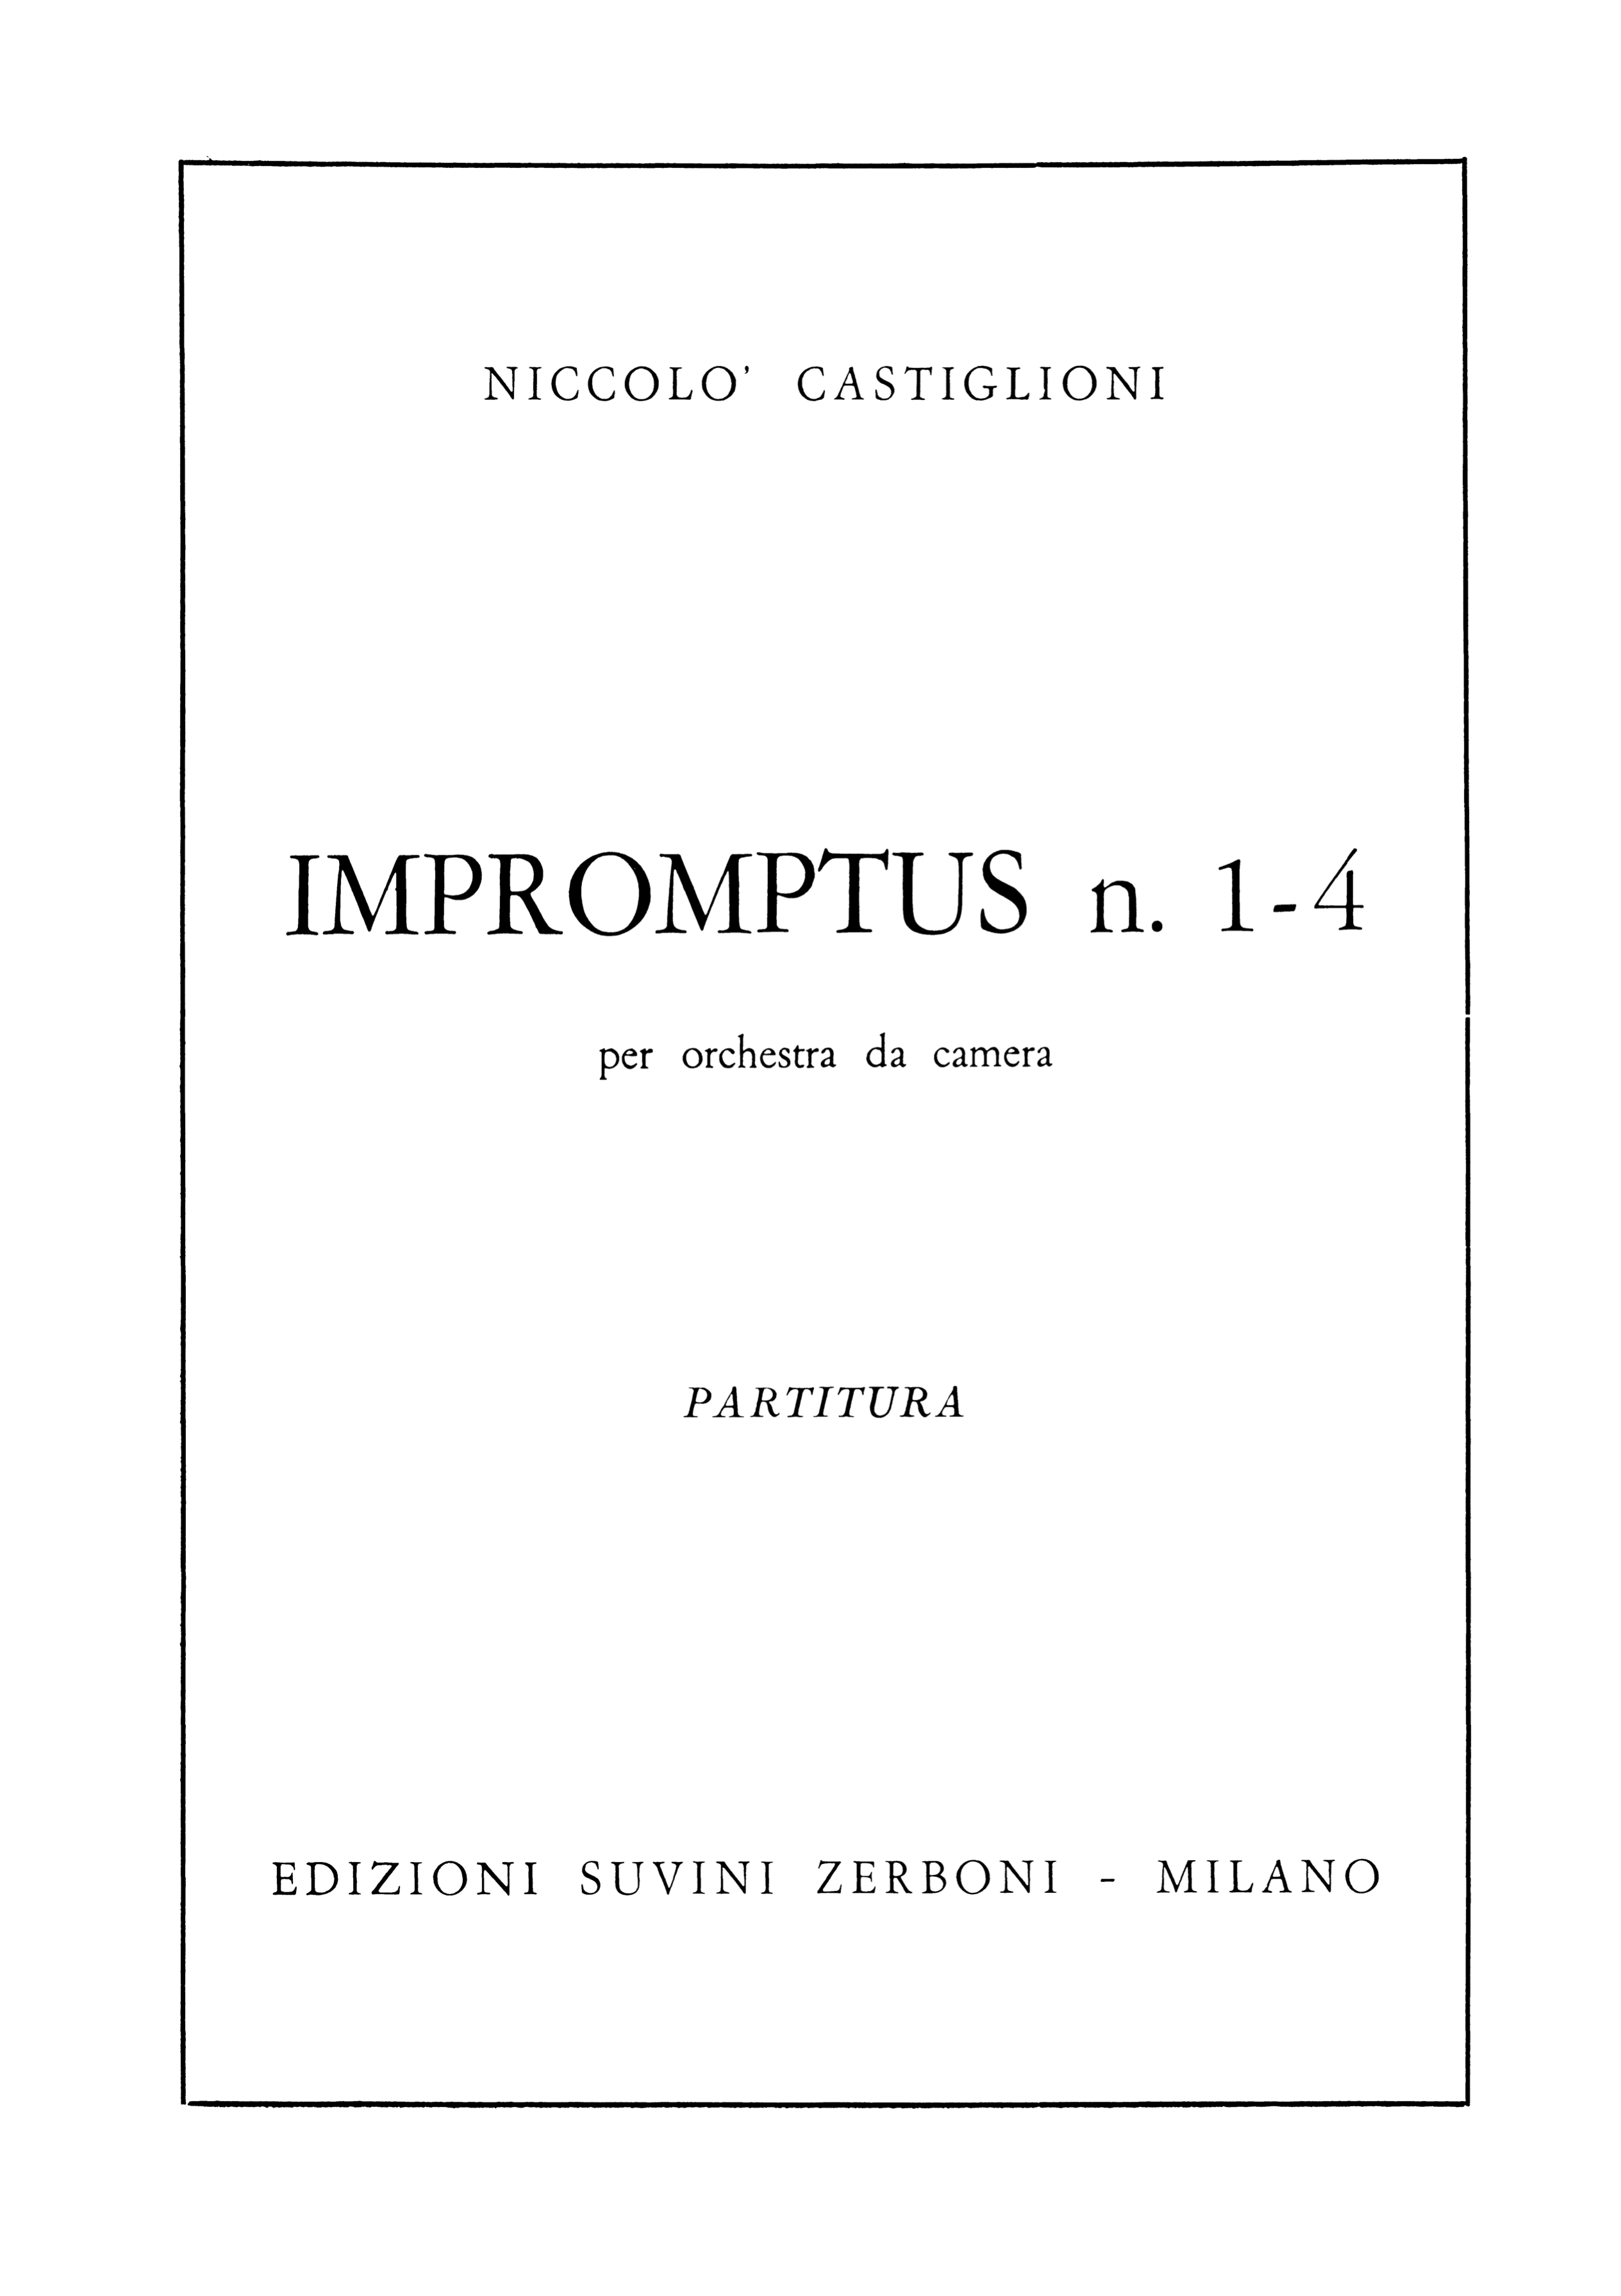 Impromptus_Castiglioni 1